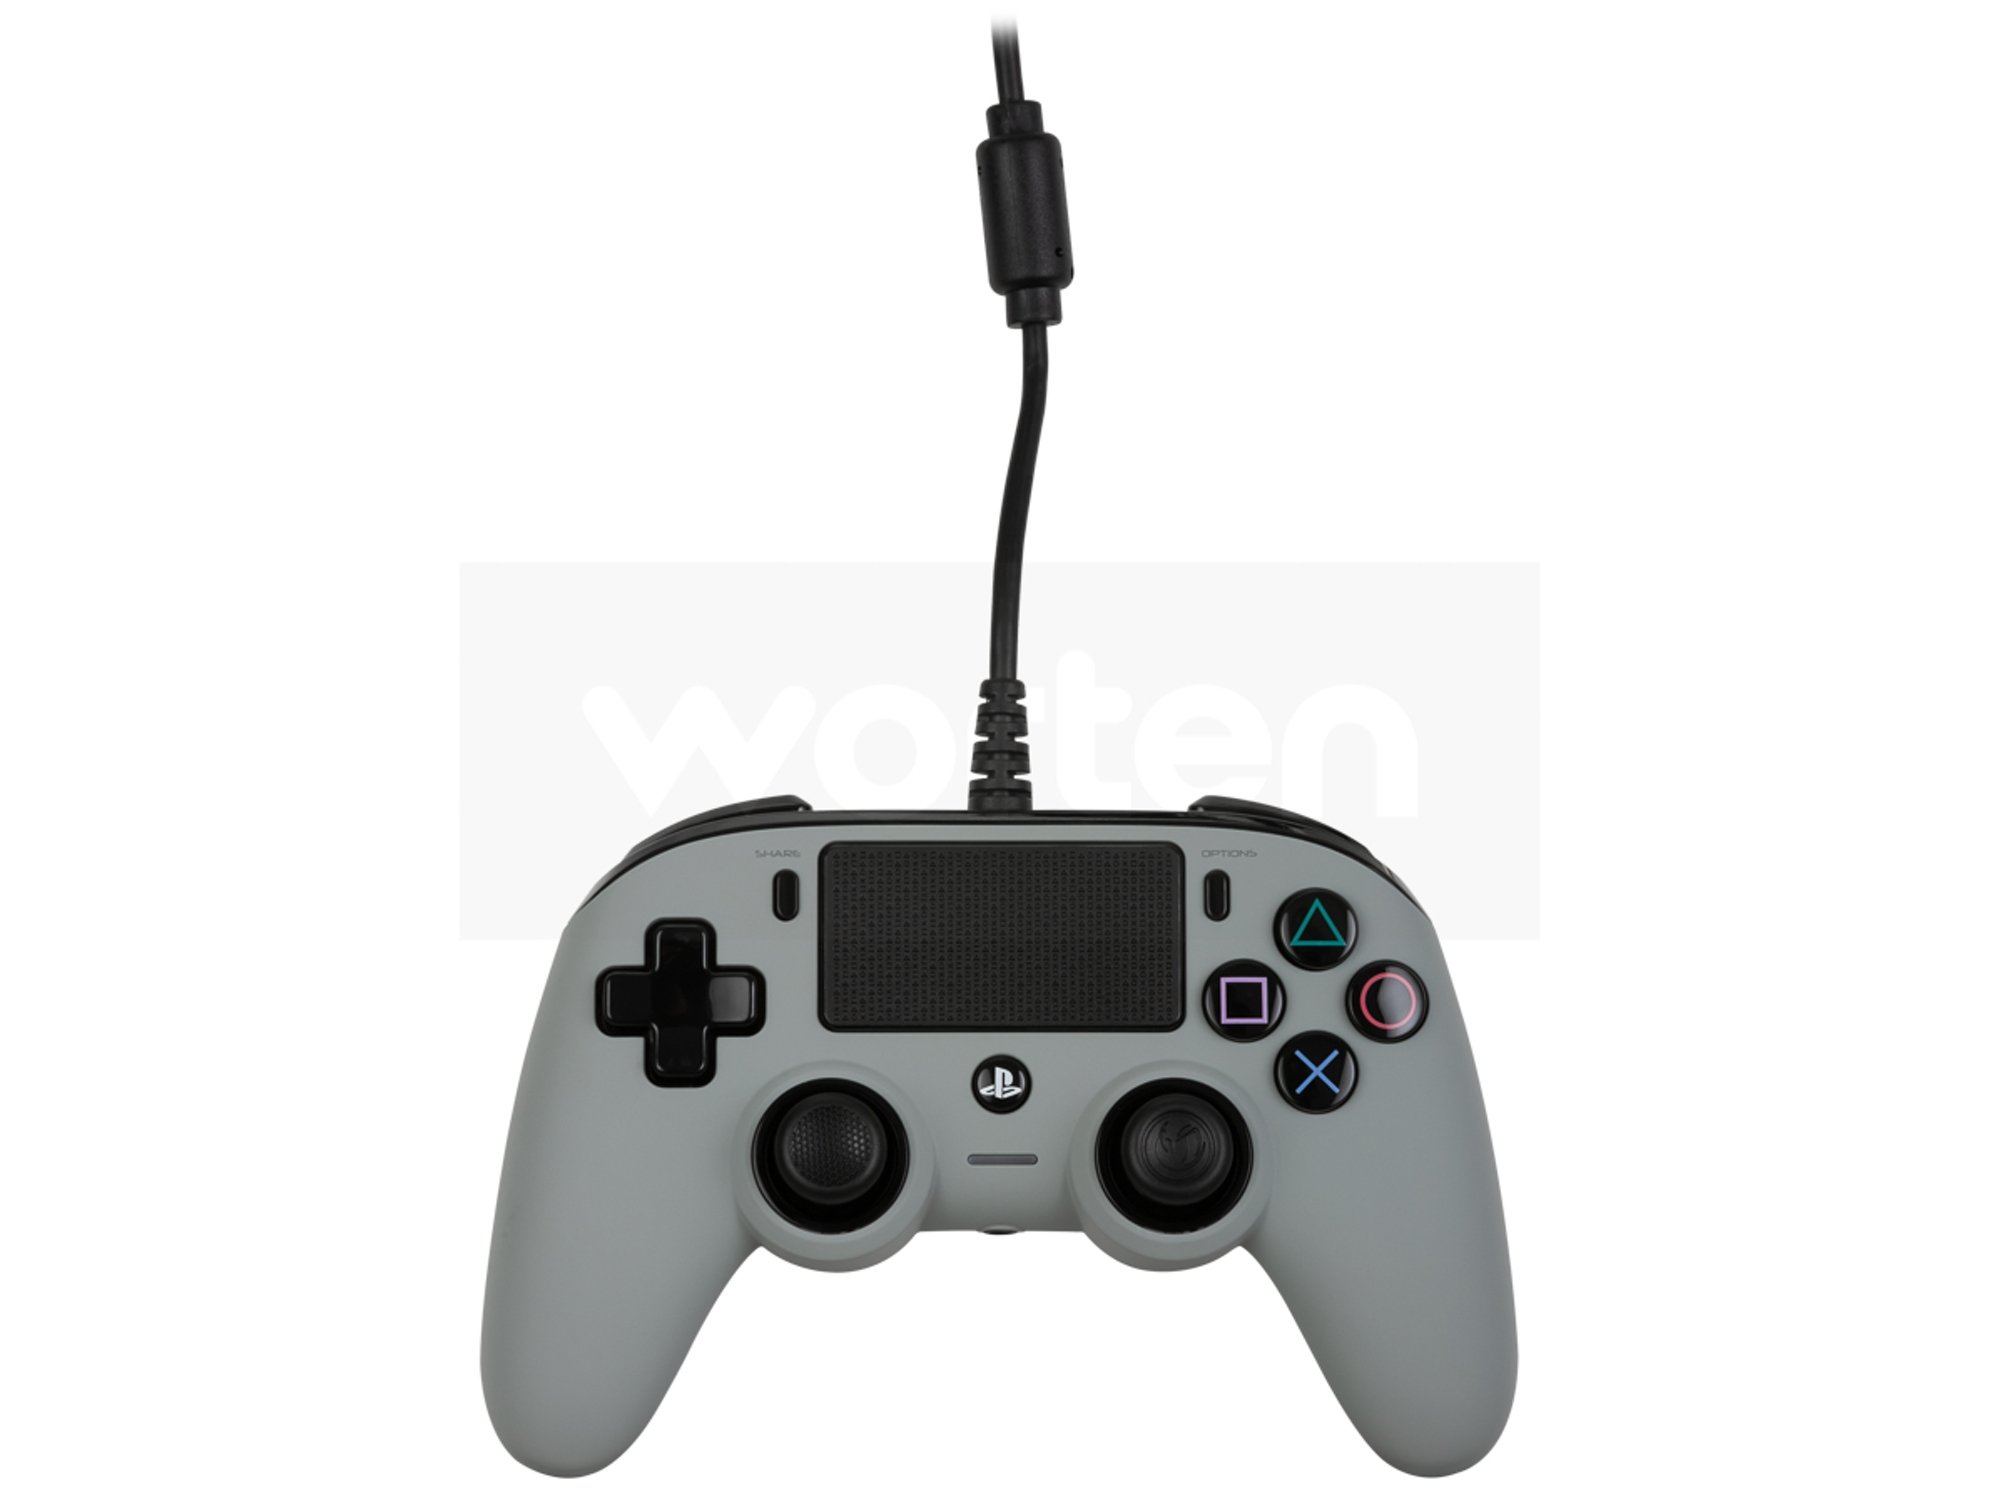 Mando Nacon Compact gris para PS4/PC - Mando consola - Los mejores precios